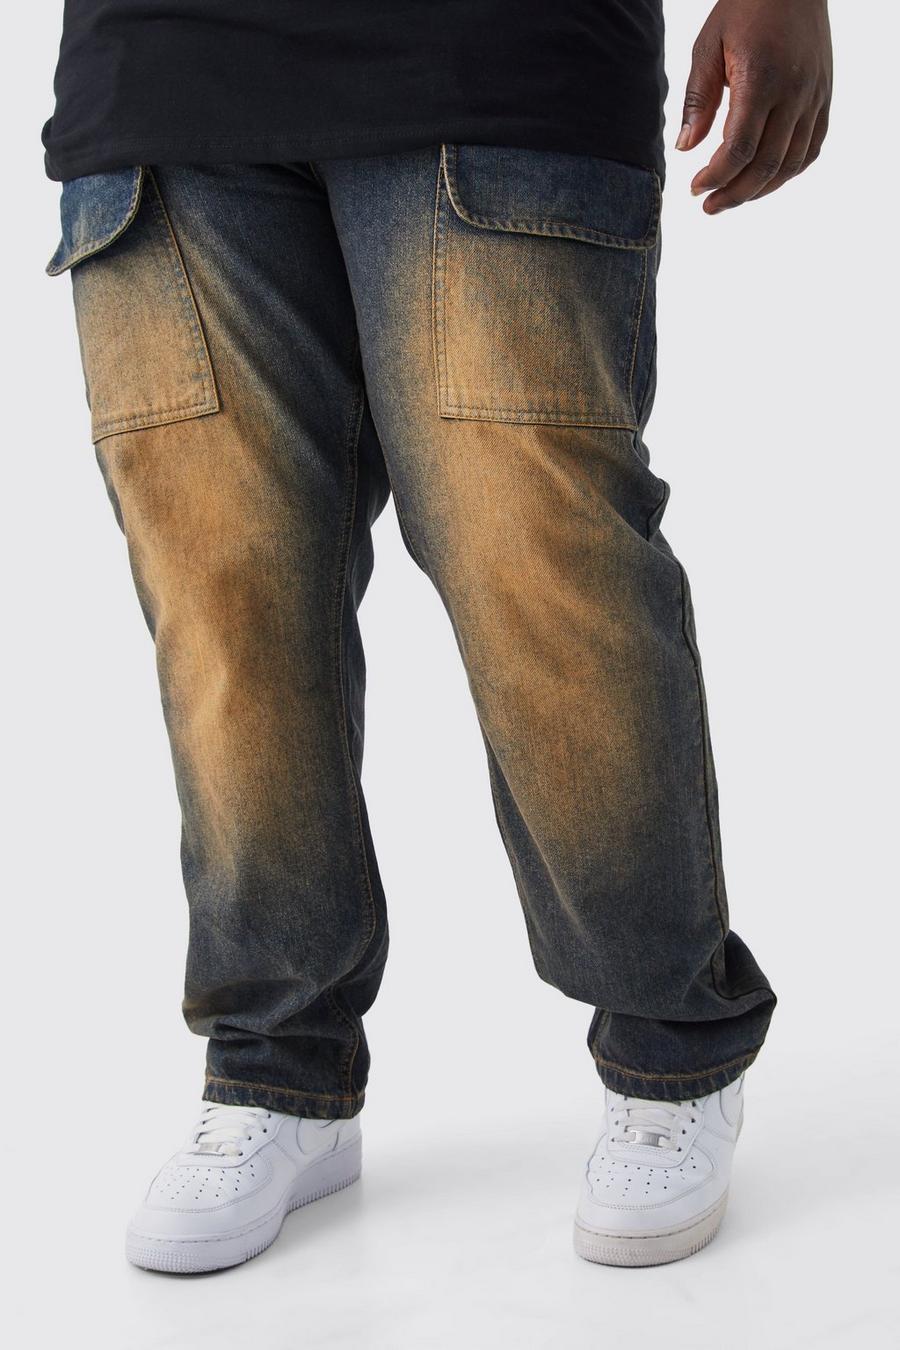 Jeans Cargo Plus Size dritti in denim rigido colorato con strappi, Antique wash